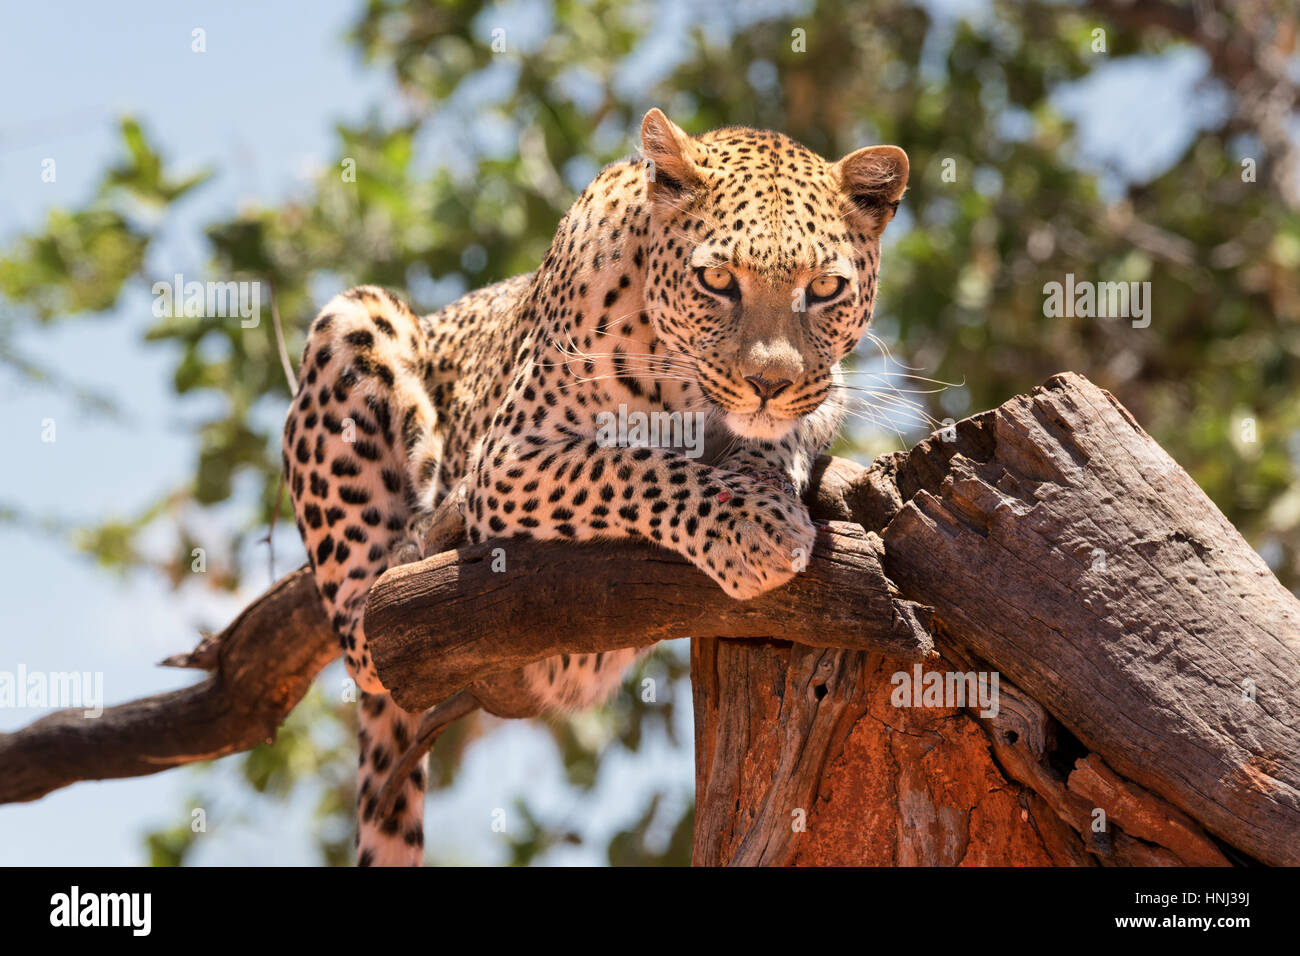 Un léopard au repos dans une position surélevée, regardant vers le bas en direction de la caméra, en Namibie. Banque D'Images